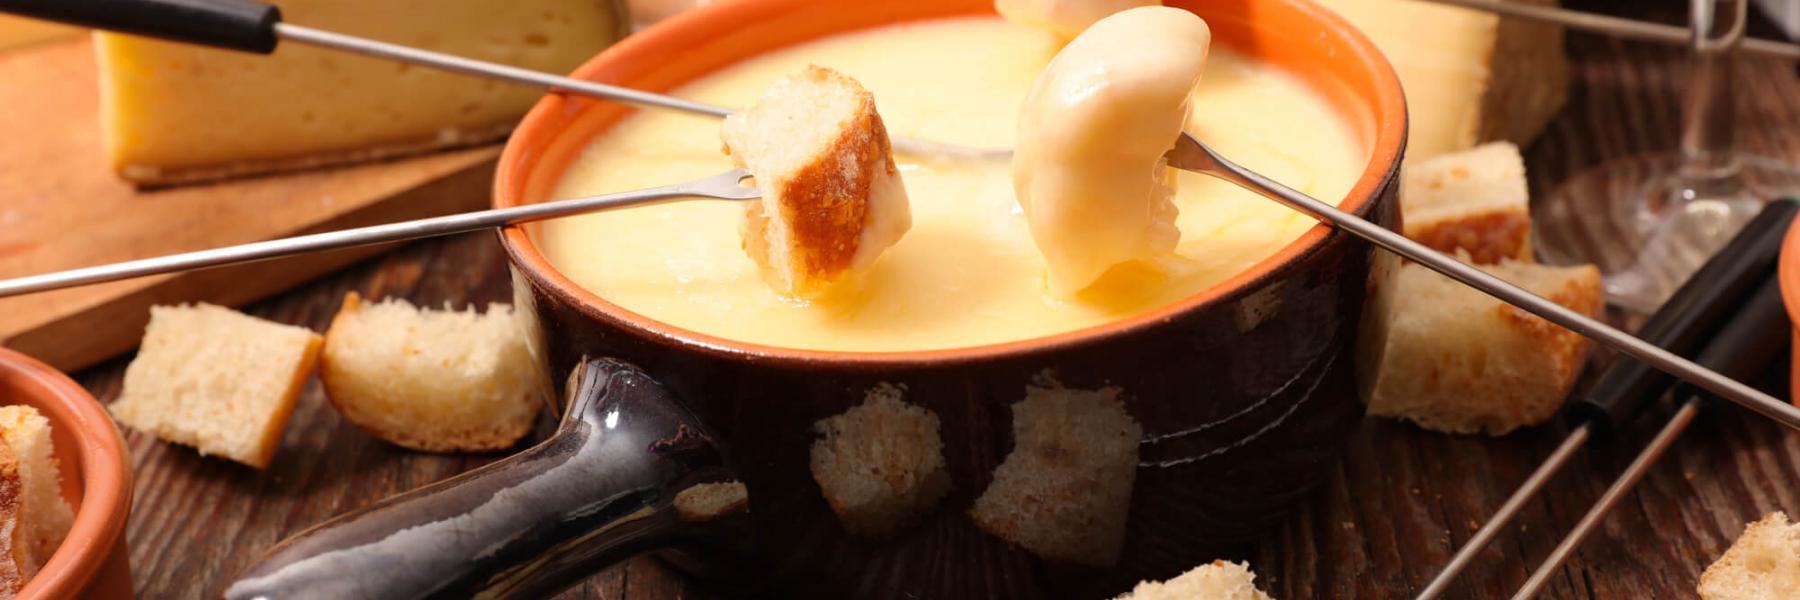 حلوى صيفية لذيذة: فوندو الجبن بالعسل